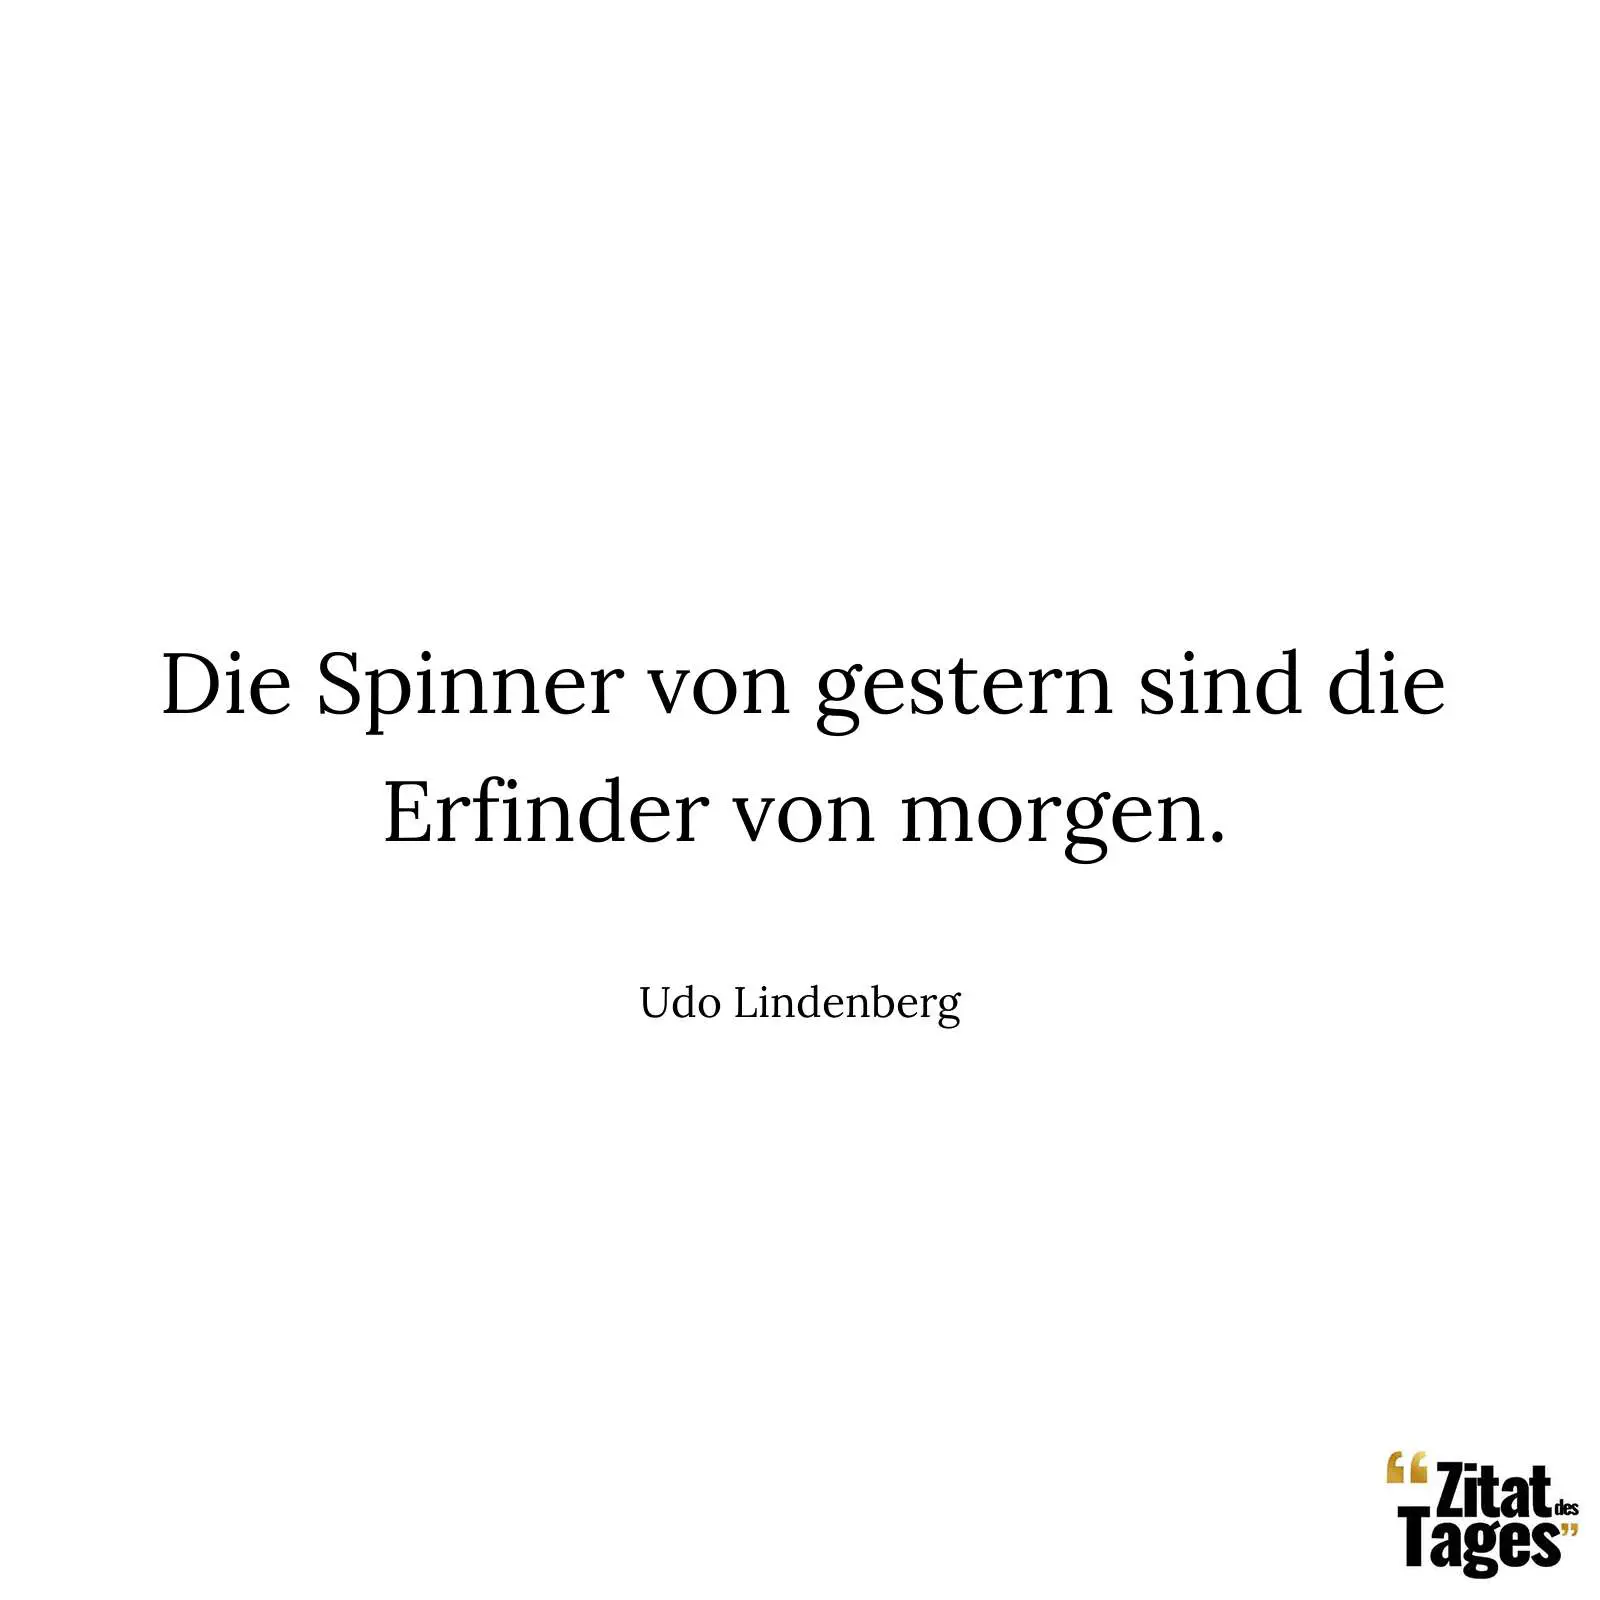 Die Spinner von gestern sind die Erfinder von morgen. - Udo Lindenberg